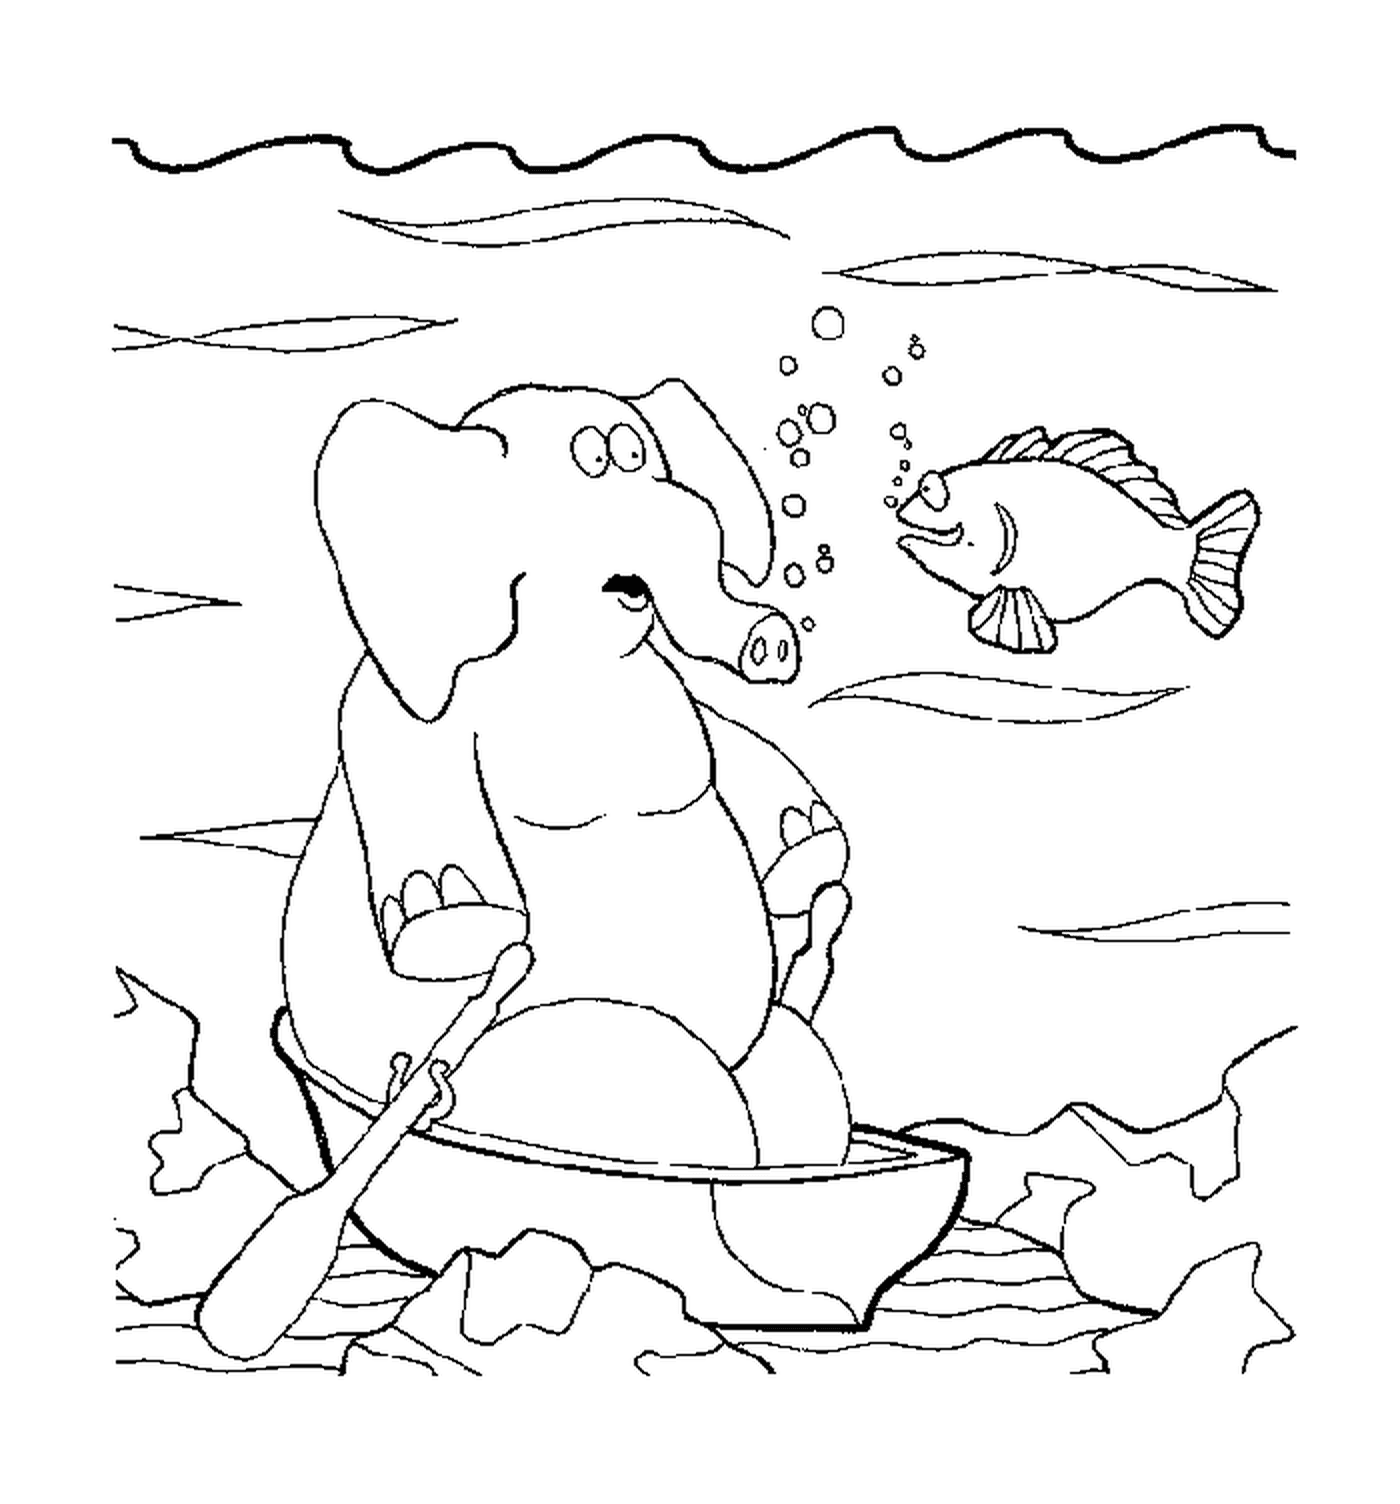  Ein Elefant unter dem Wasser 